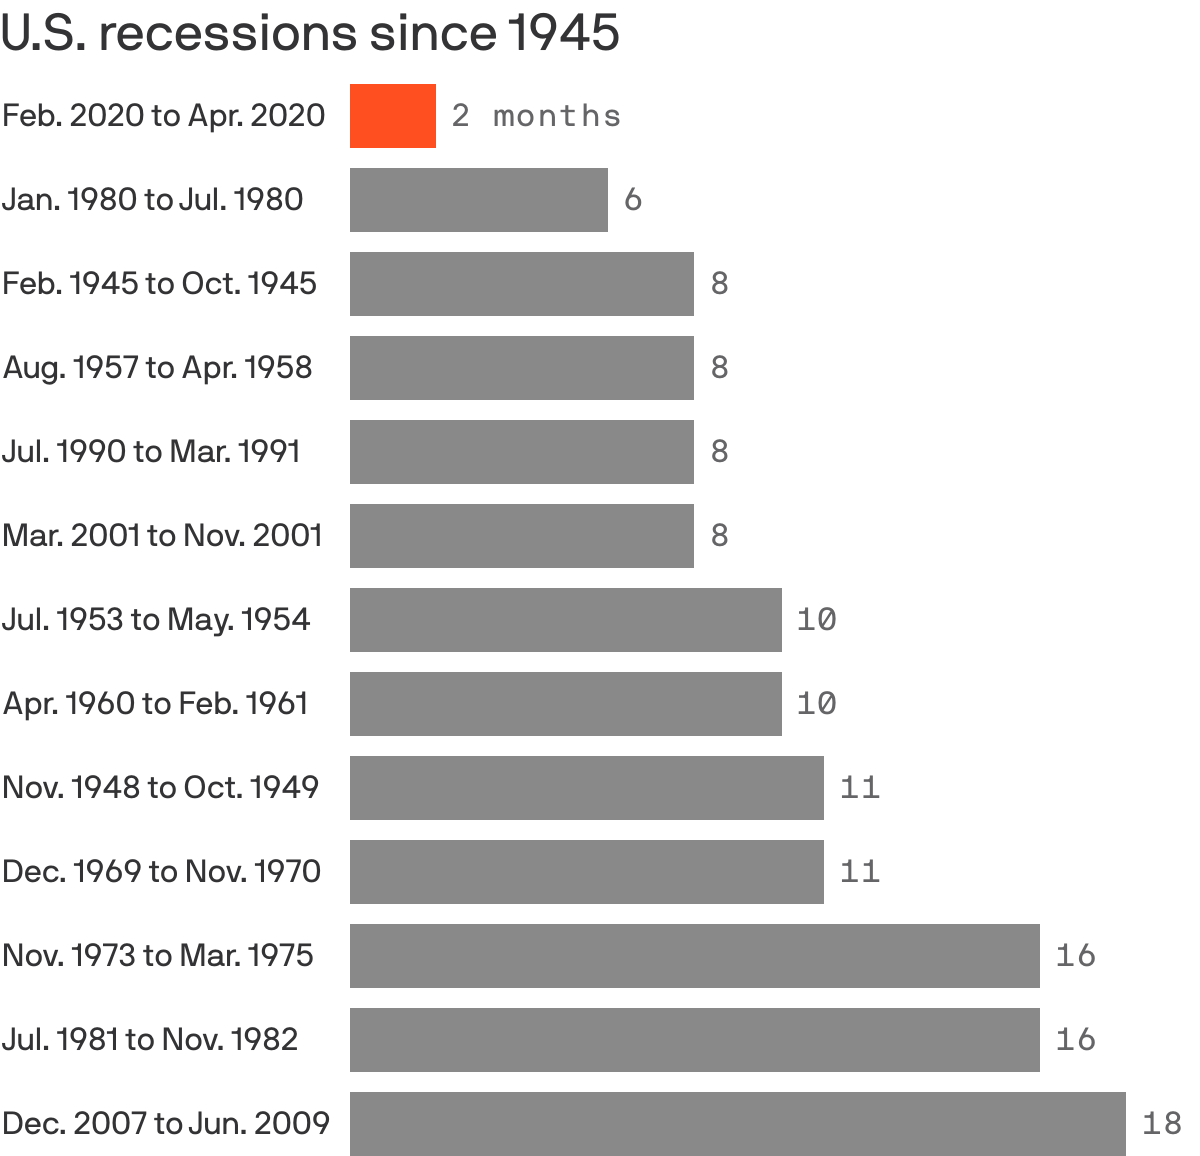 U.S. recessions chart